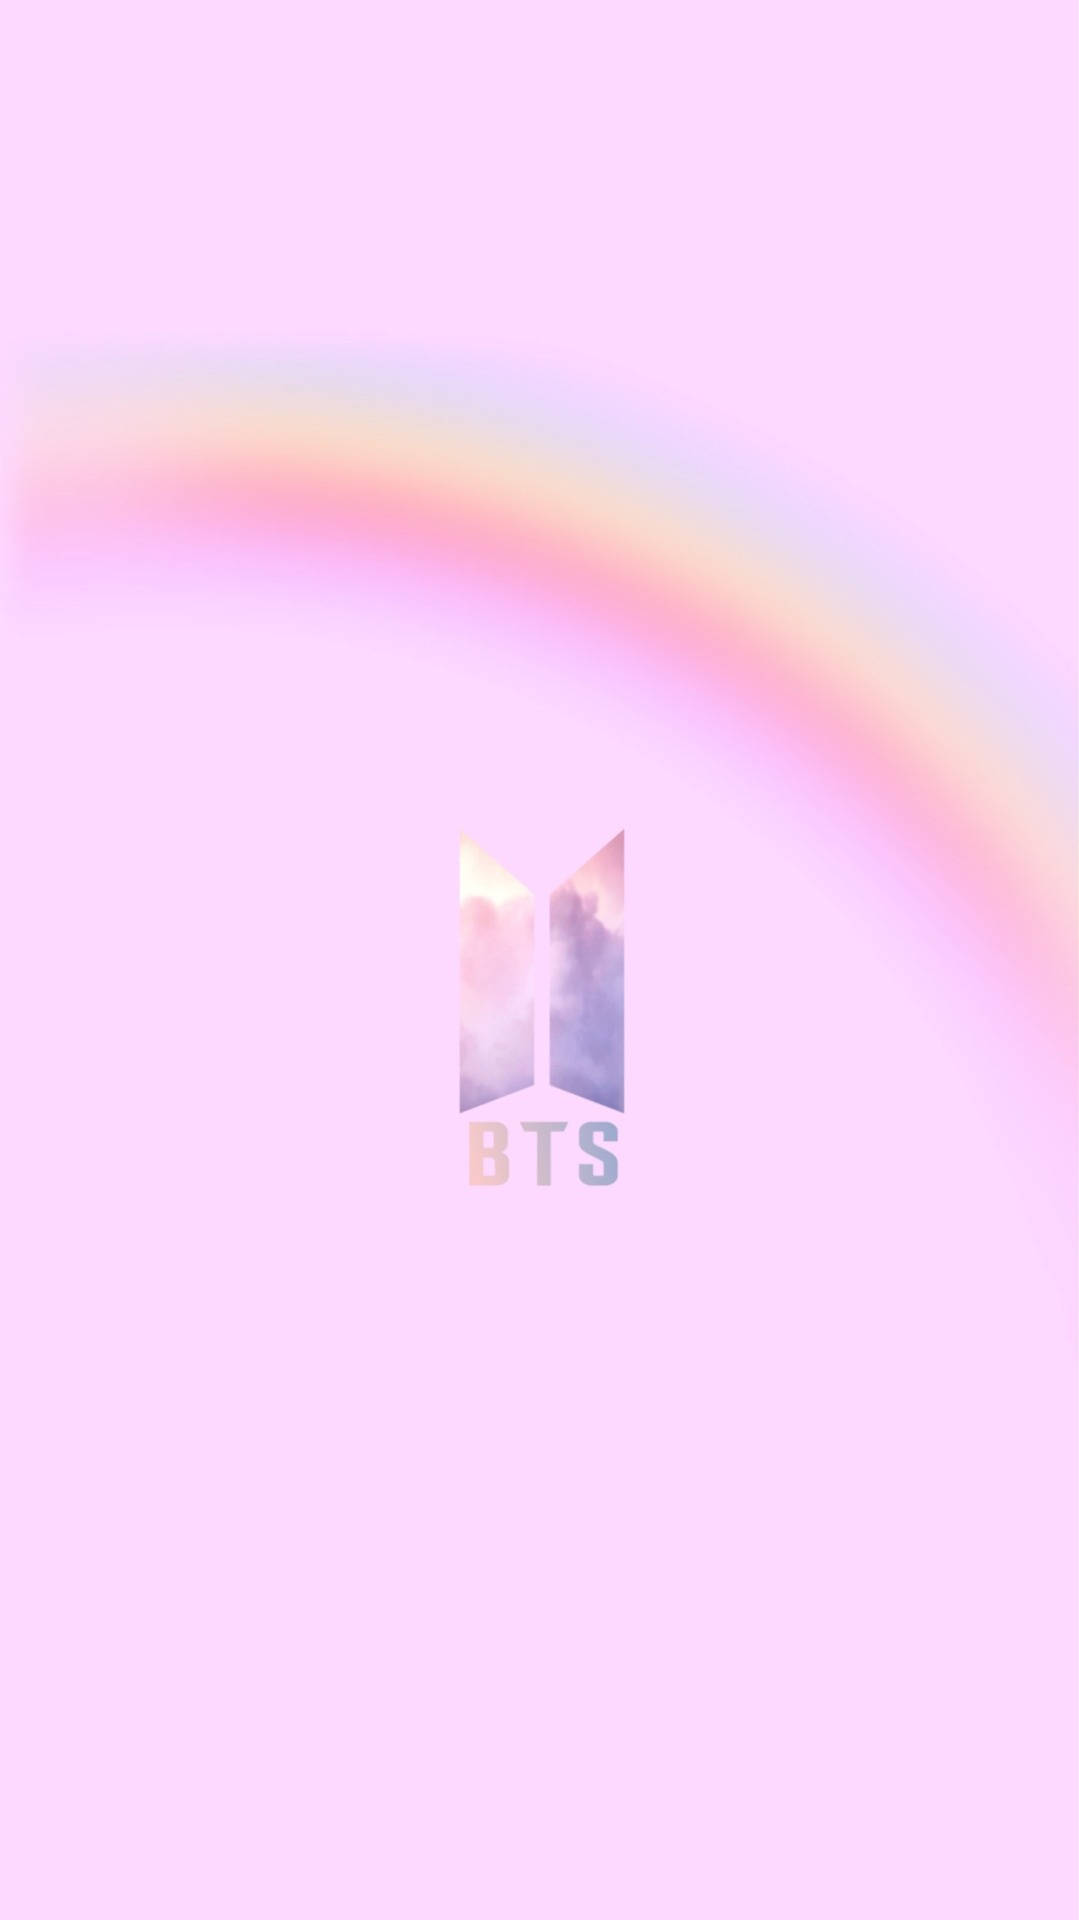 Bts Logo Pink Rainbow Background